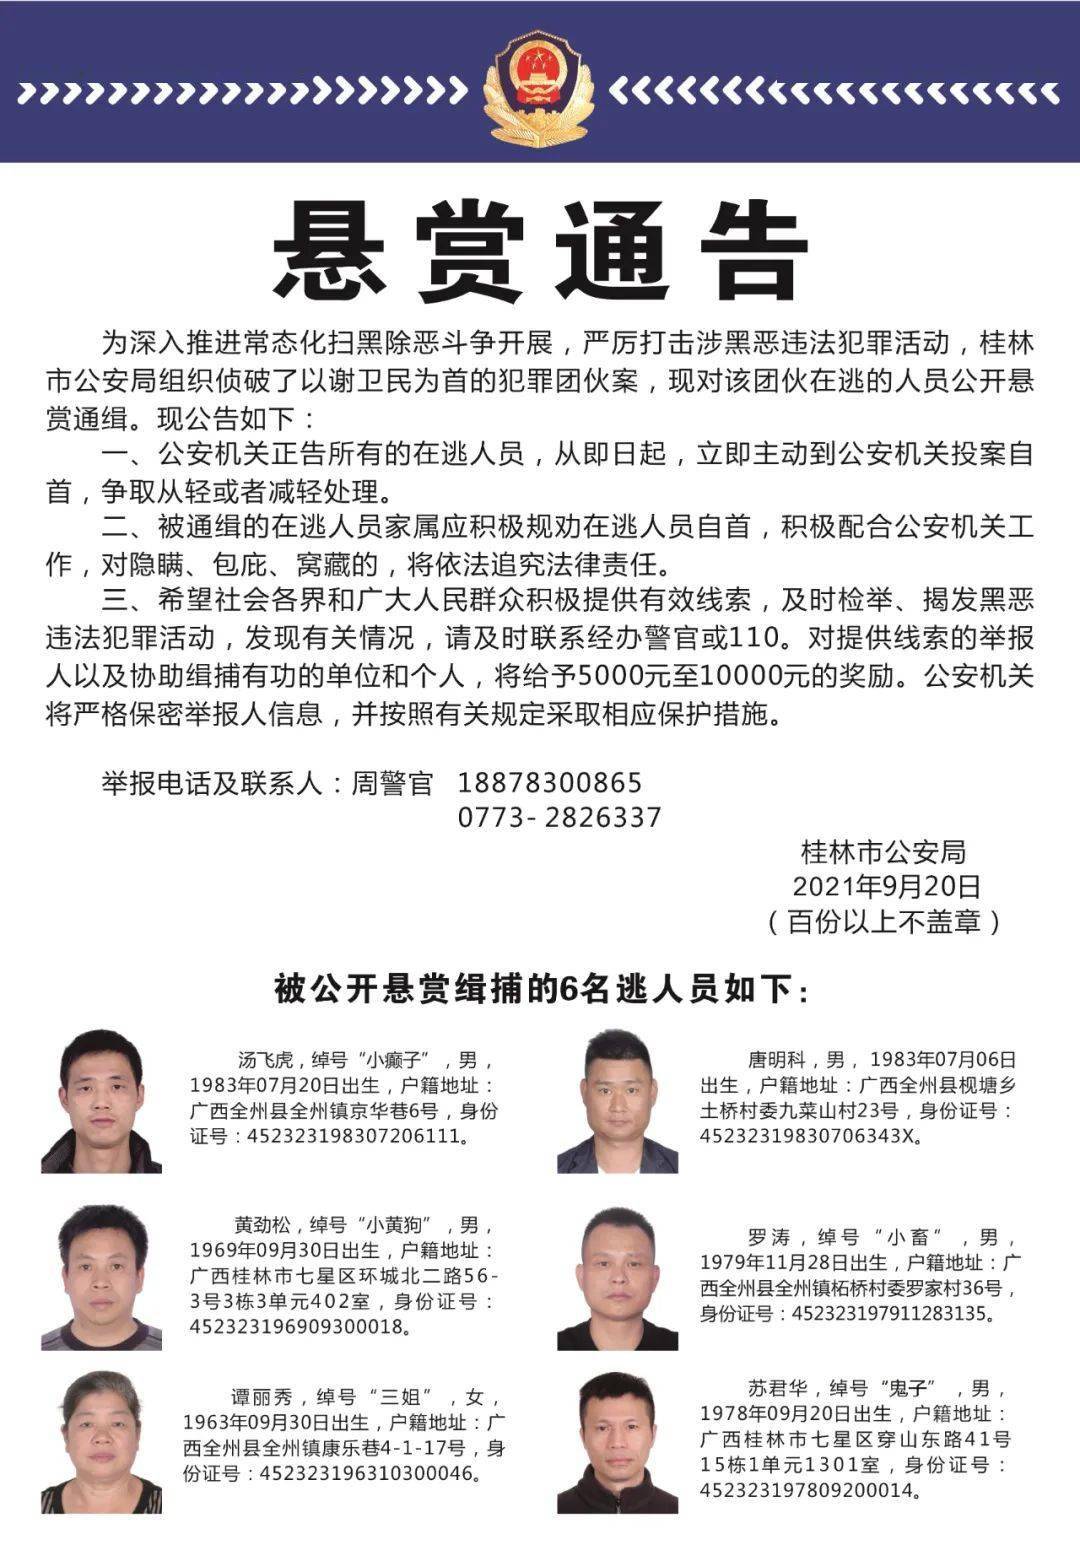 恶违法犯罪活动,桂林市公安局组织侦破了以谢卫民为首的犯罪团伙案,现